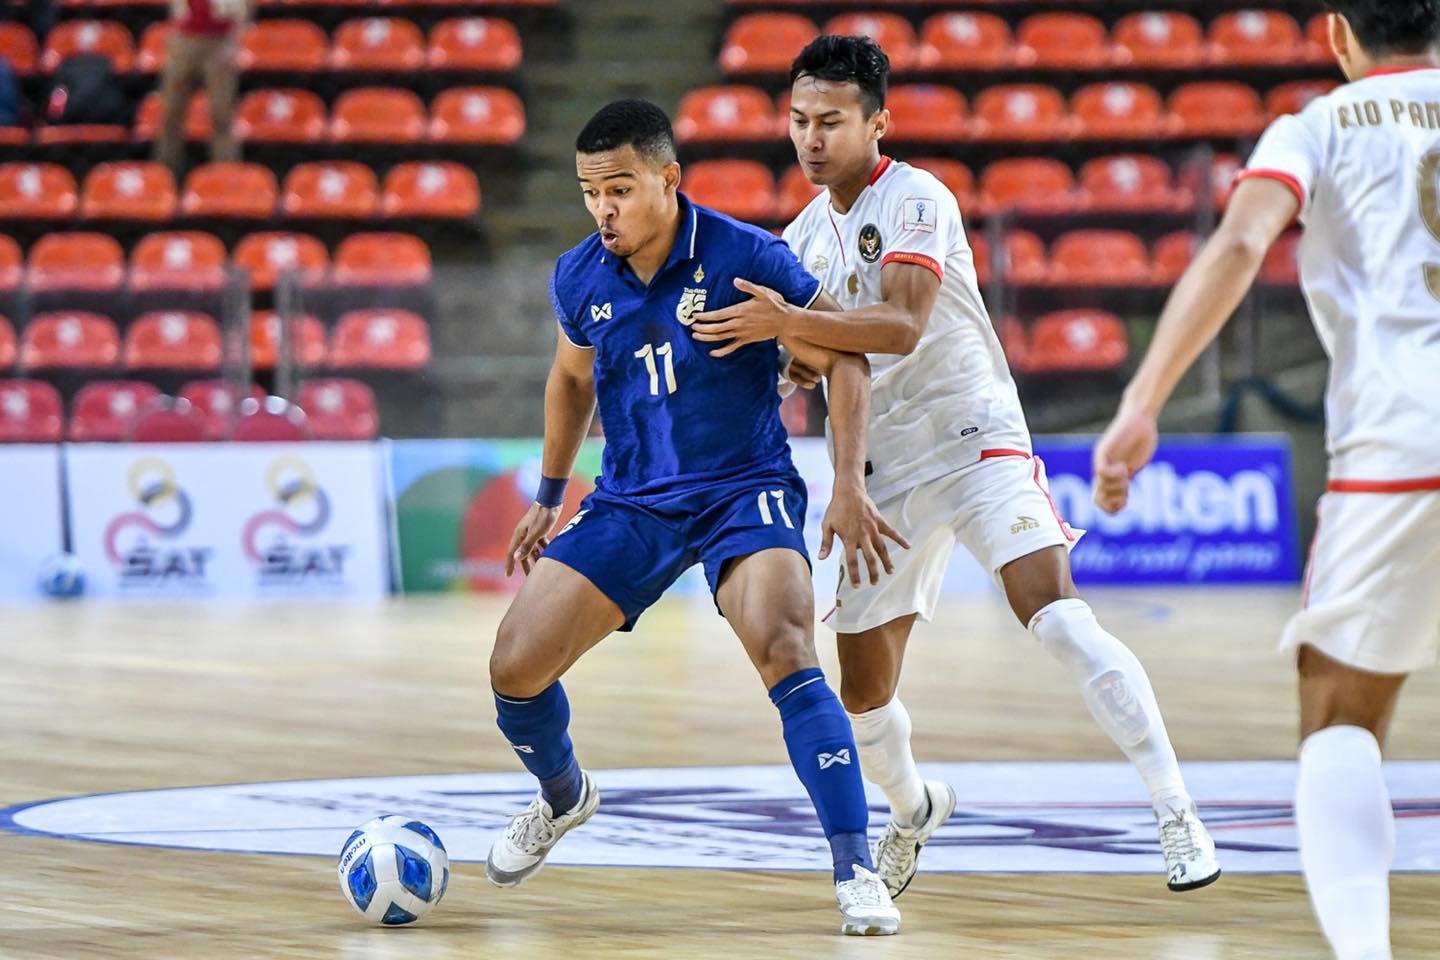 ĐT Futsal Thái Lan bị Indonesia cầm hoà, chưa mất ngôi đầu bảng - Ảnh 2